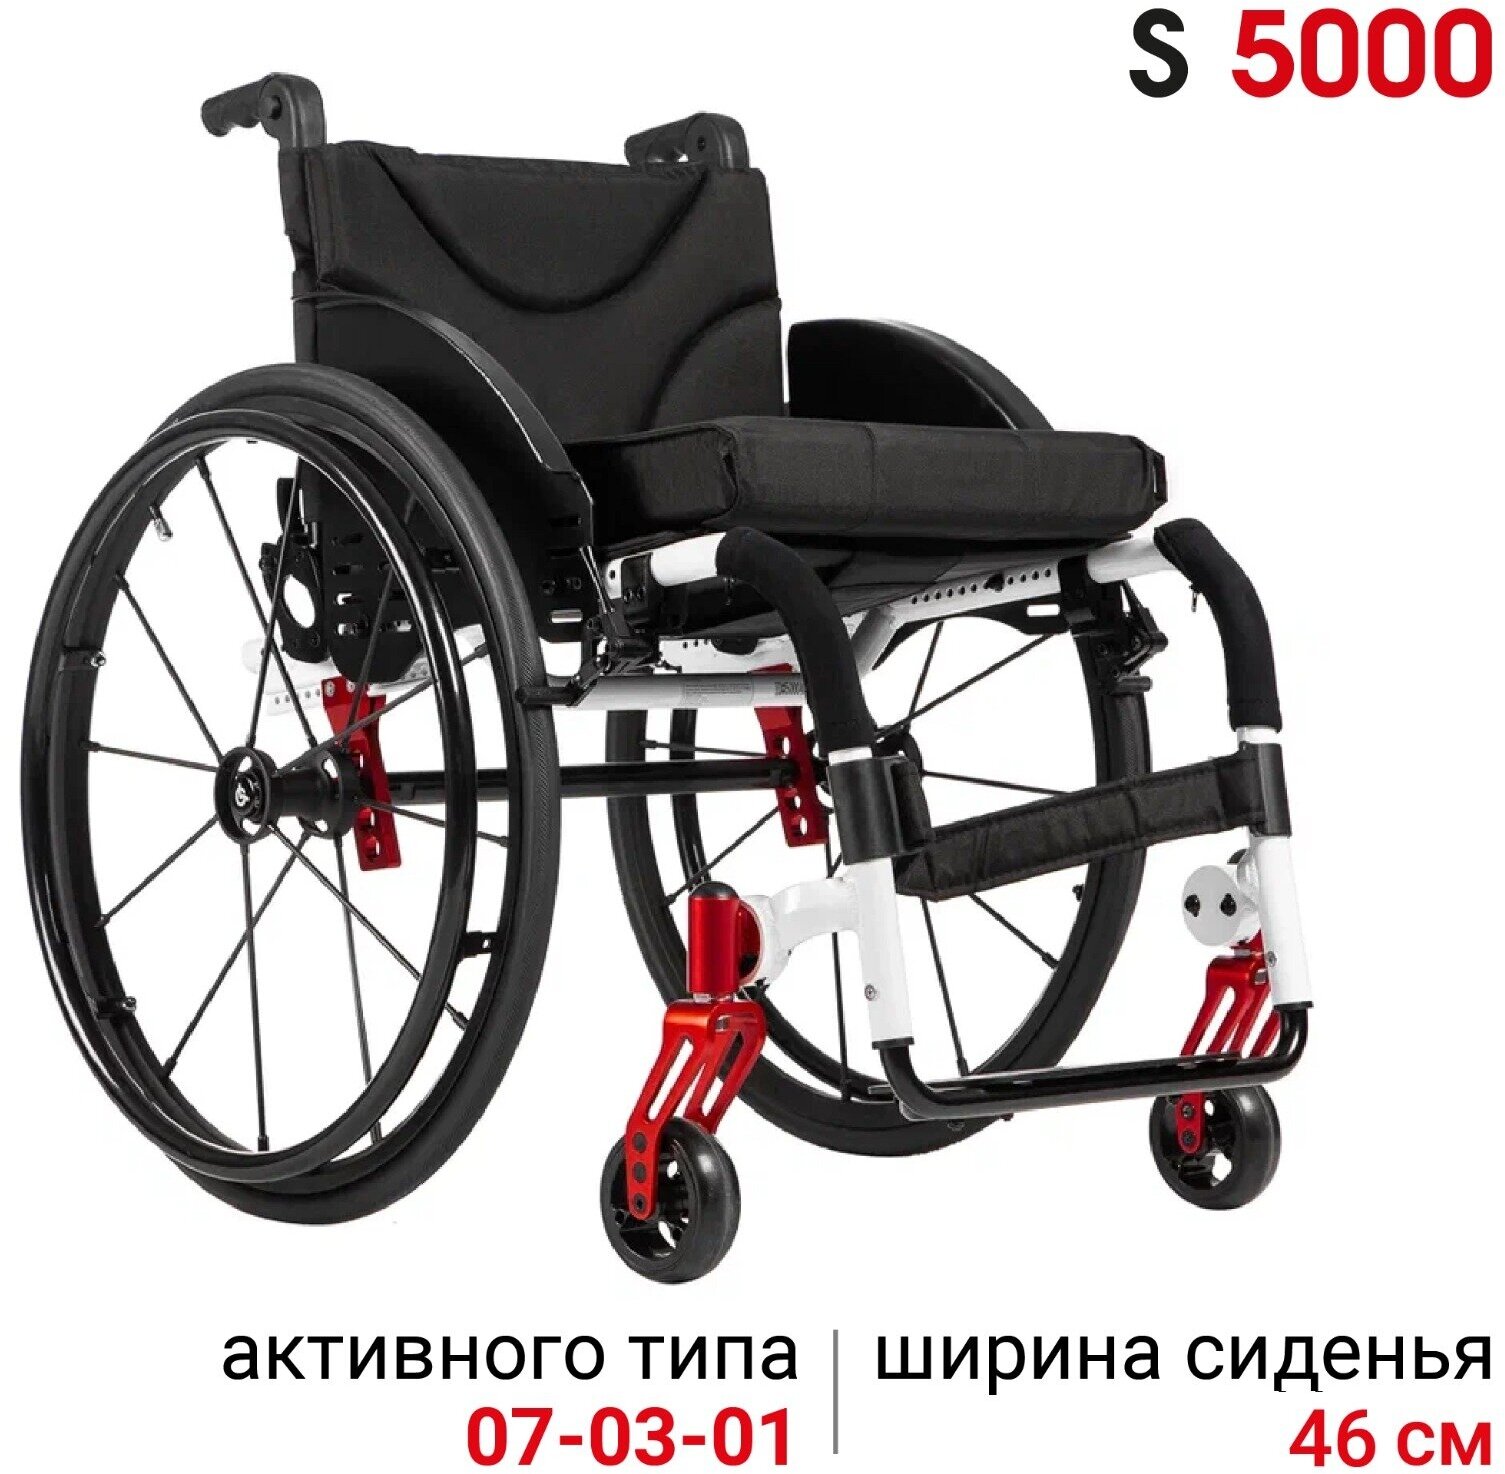 Ortonica S 5000 41PU RR/ Активное кресло-коляска для инвалидов складное облегченное с жесткой алюминиевой рамой для фитнеса, путешествий, вес 13,8 кг, ширина сиденья 41 см, шины Schwalbe RightRun